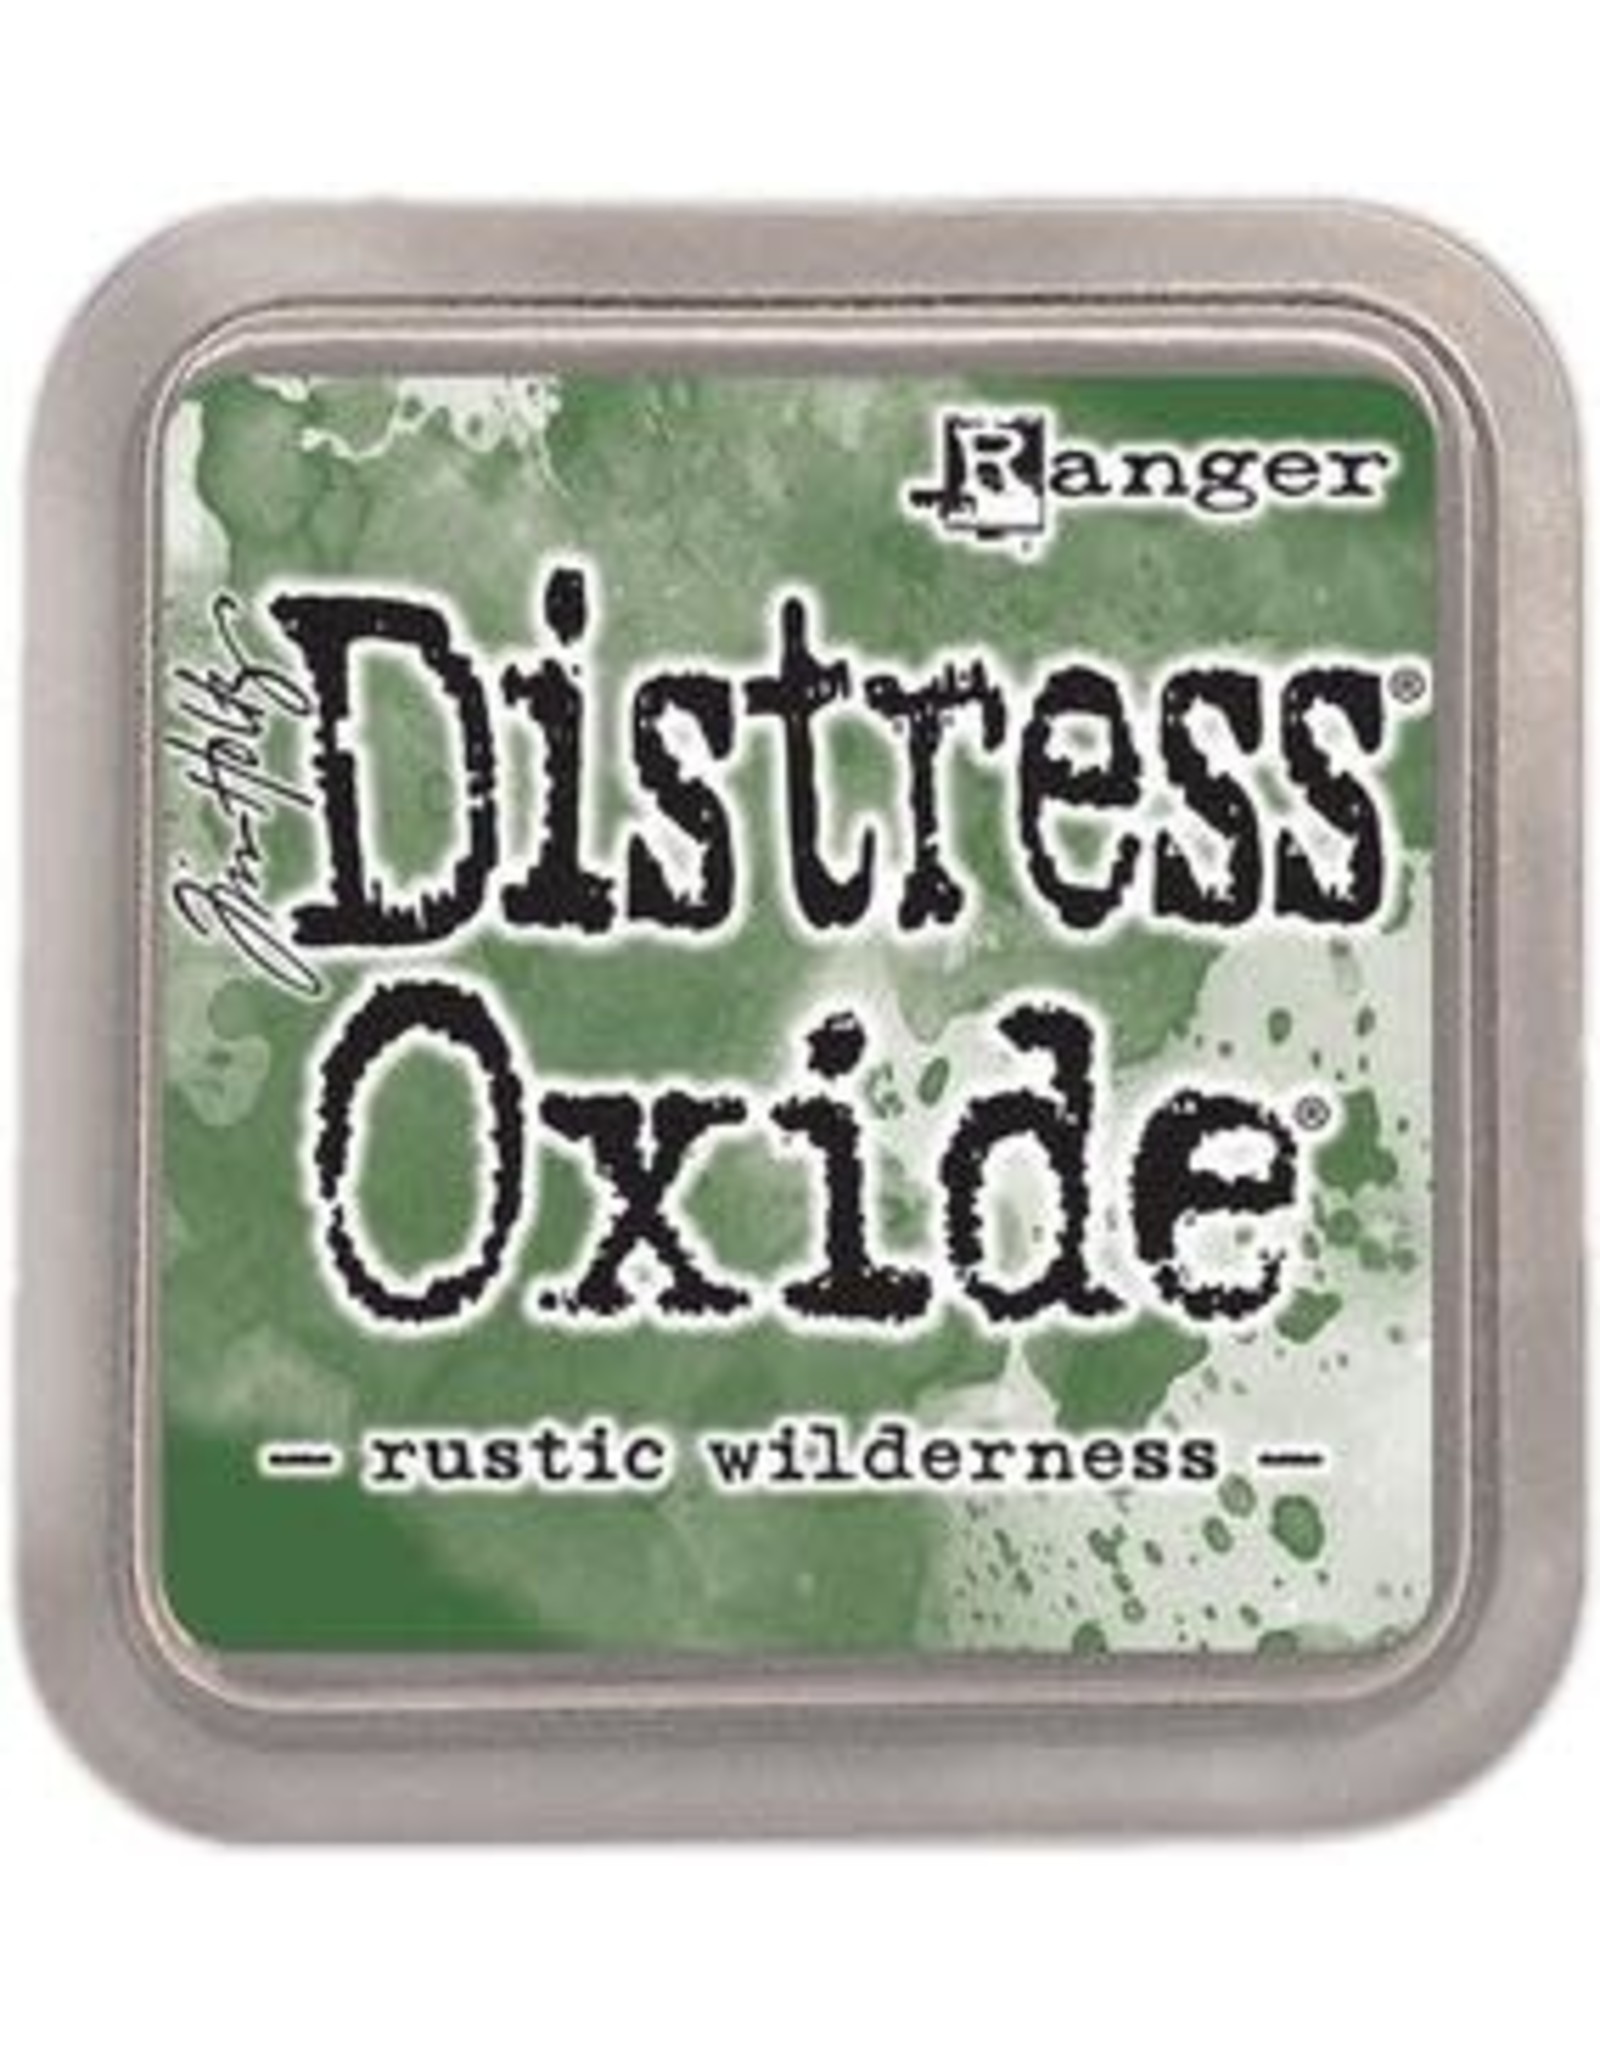 Tim Holtz - Ranger Distress Oxide Rustic Wilderness